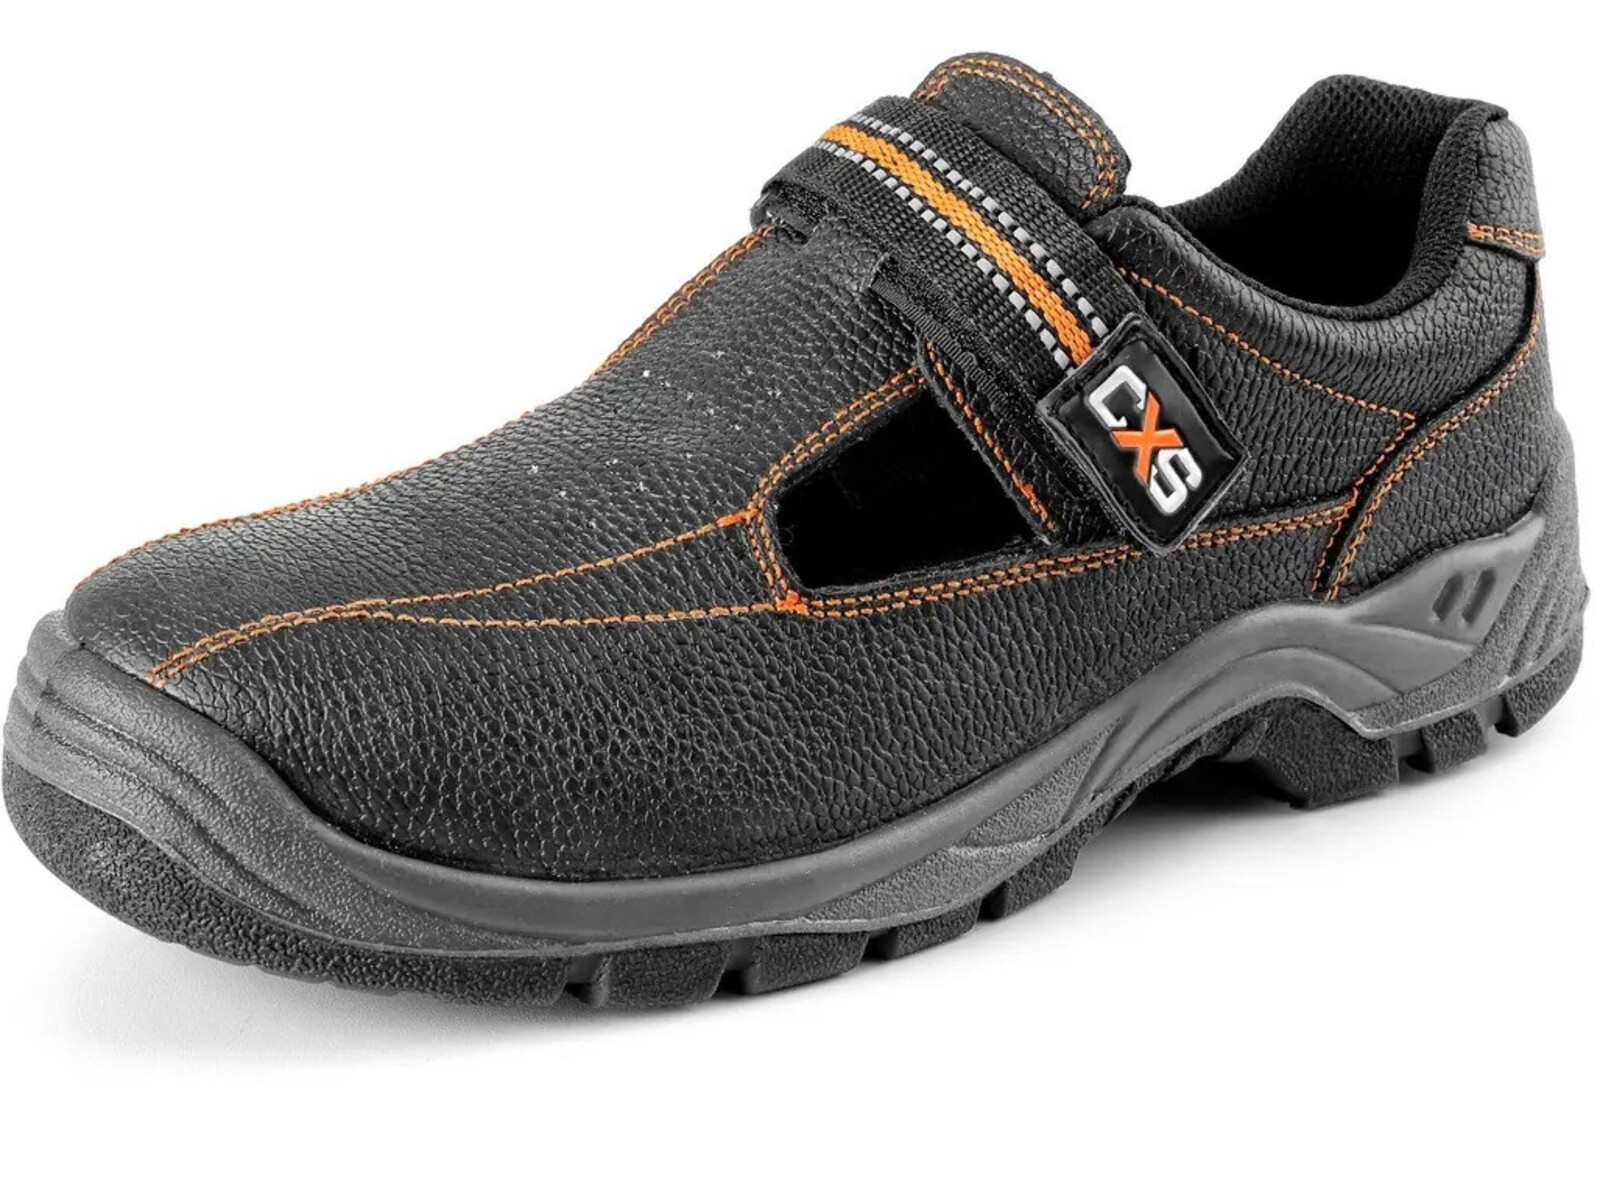 Pracovné sandále CXS Stone Nefrit O1 FO SRC - veľkosť: 50, farba: čierna/oranžová